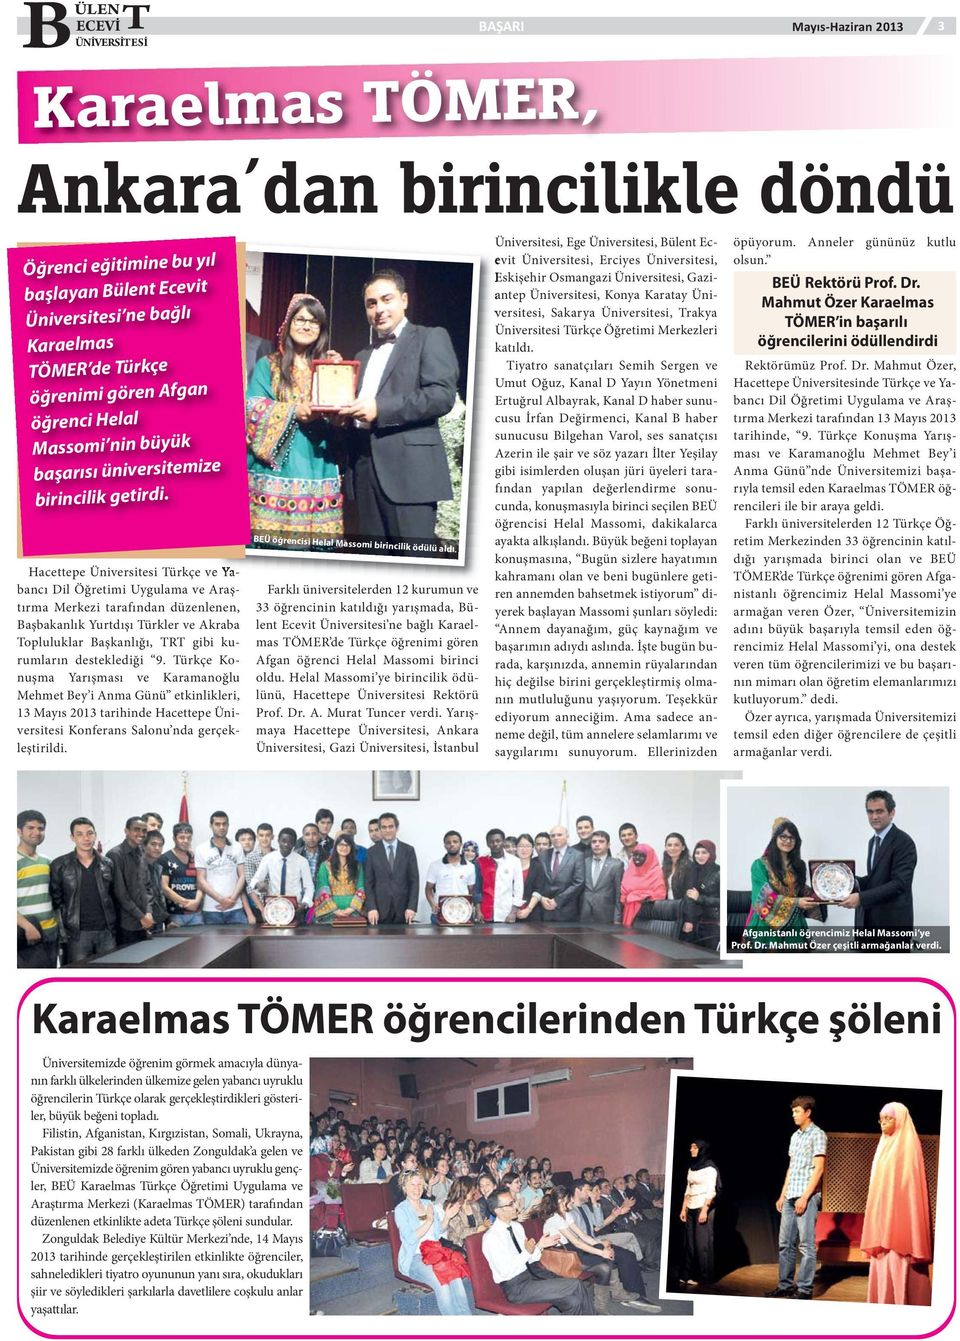 Hacettepe Üniversitesi Türkçe ve Yabancı Dil Öğretimi Uygulama ve Araştırma Merkezi tarafından düzenlenen, Başbakanlık Yurtdışı Türkler ve Akraba Topluluklar Başkanlığı, TRT gibi kurumların